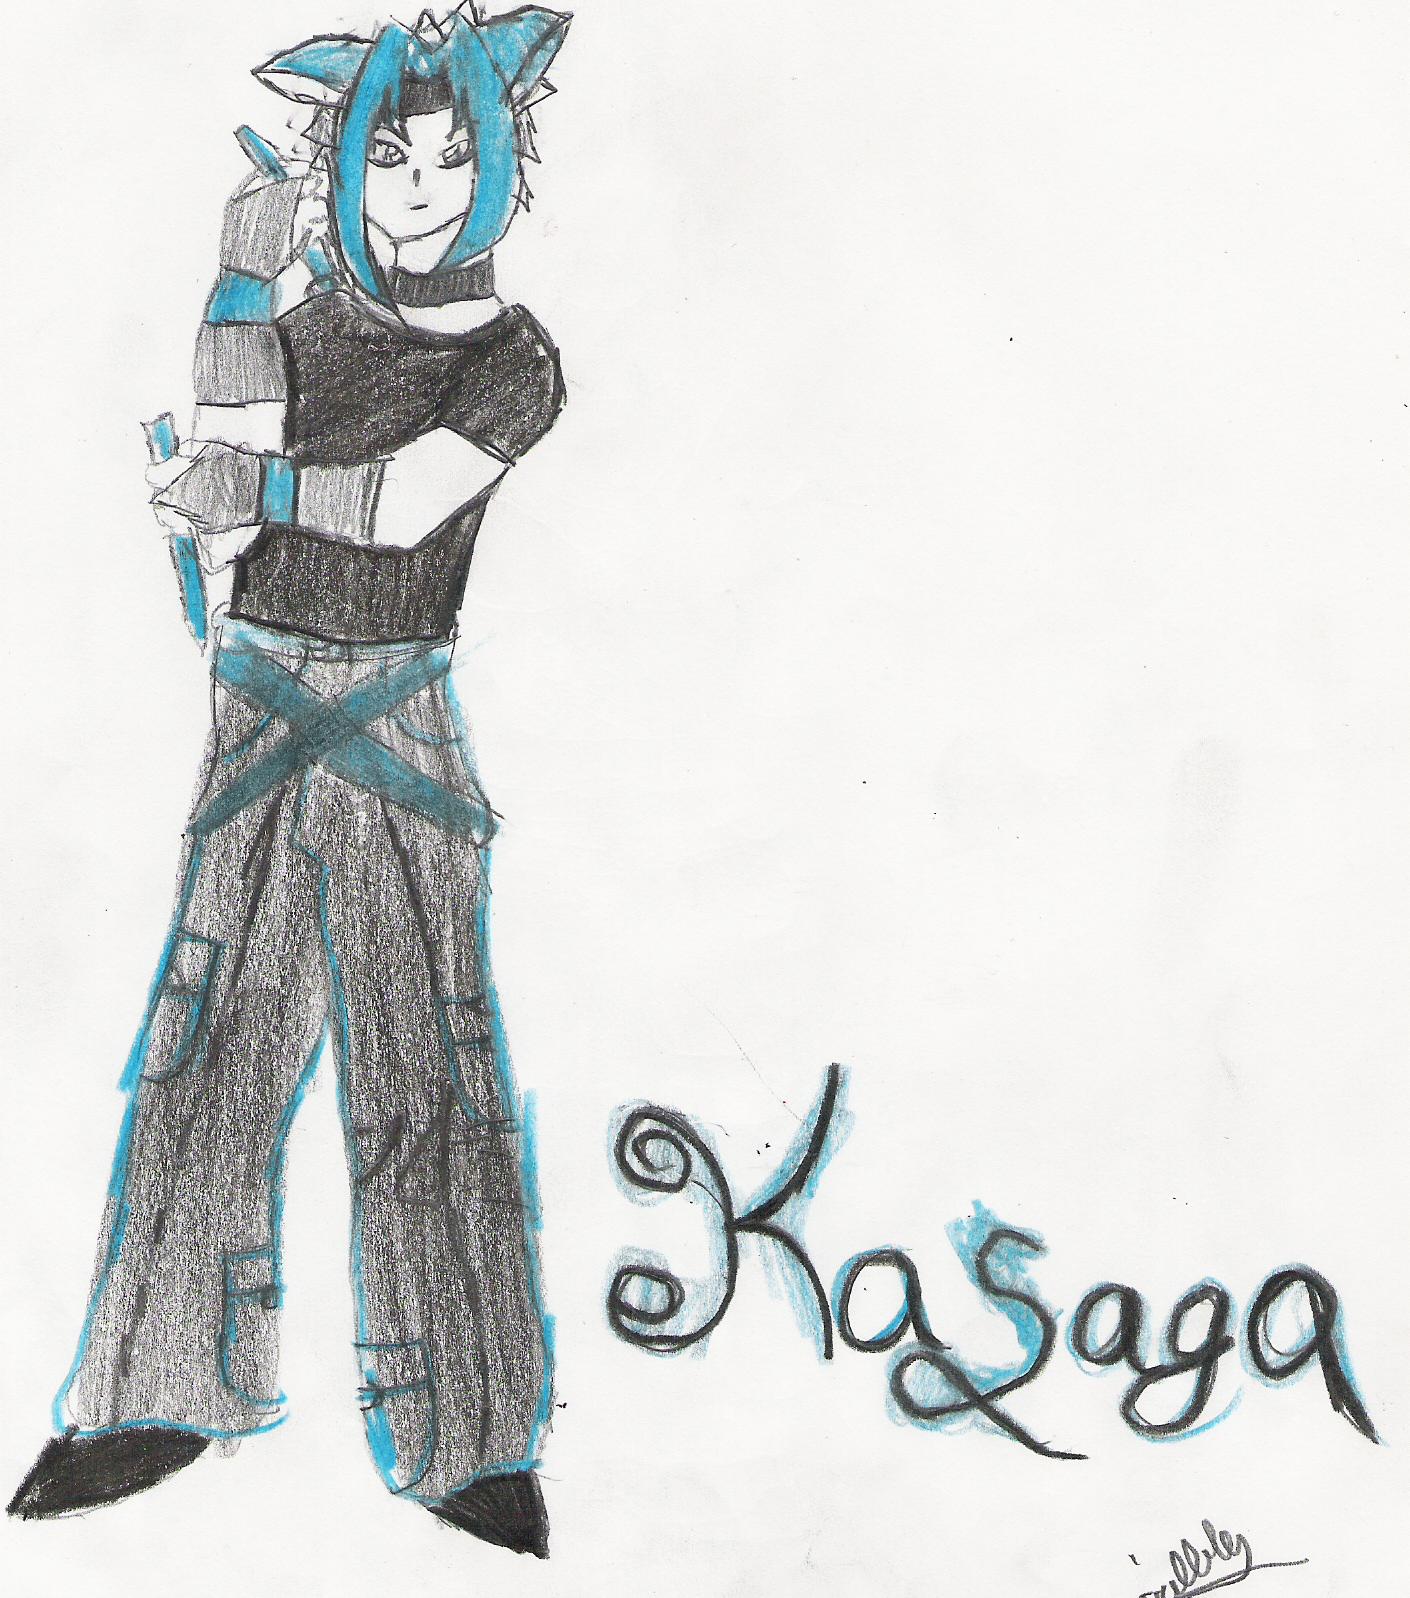 My Imagainary Friend Kasaga by XxGoddesSAxX